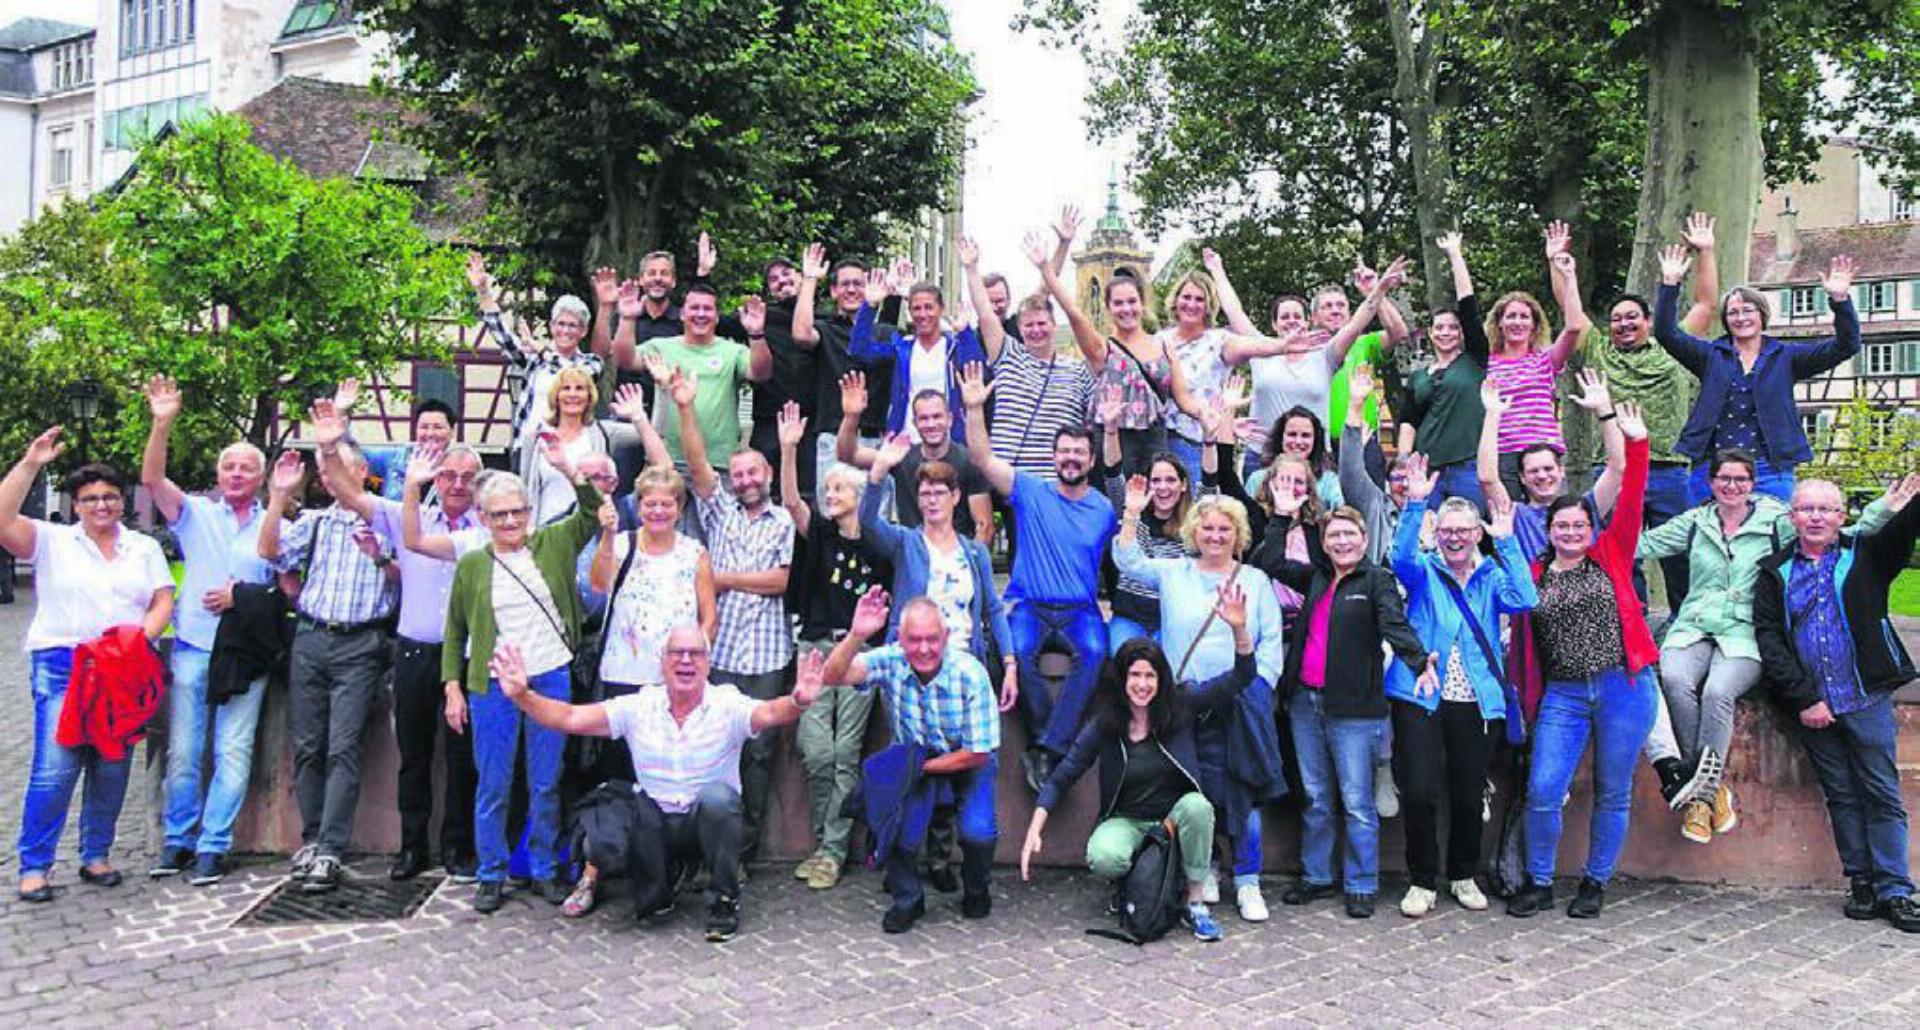 Gruppenfoto: Die Musikantinnen und Musikanten des Musikvereins Lunkhofen mit ihren Partnerinnen und Partnern in Colmar. Bild: zg